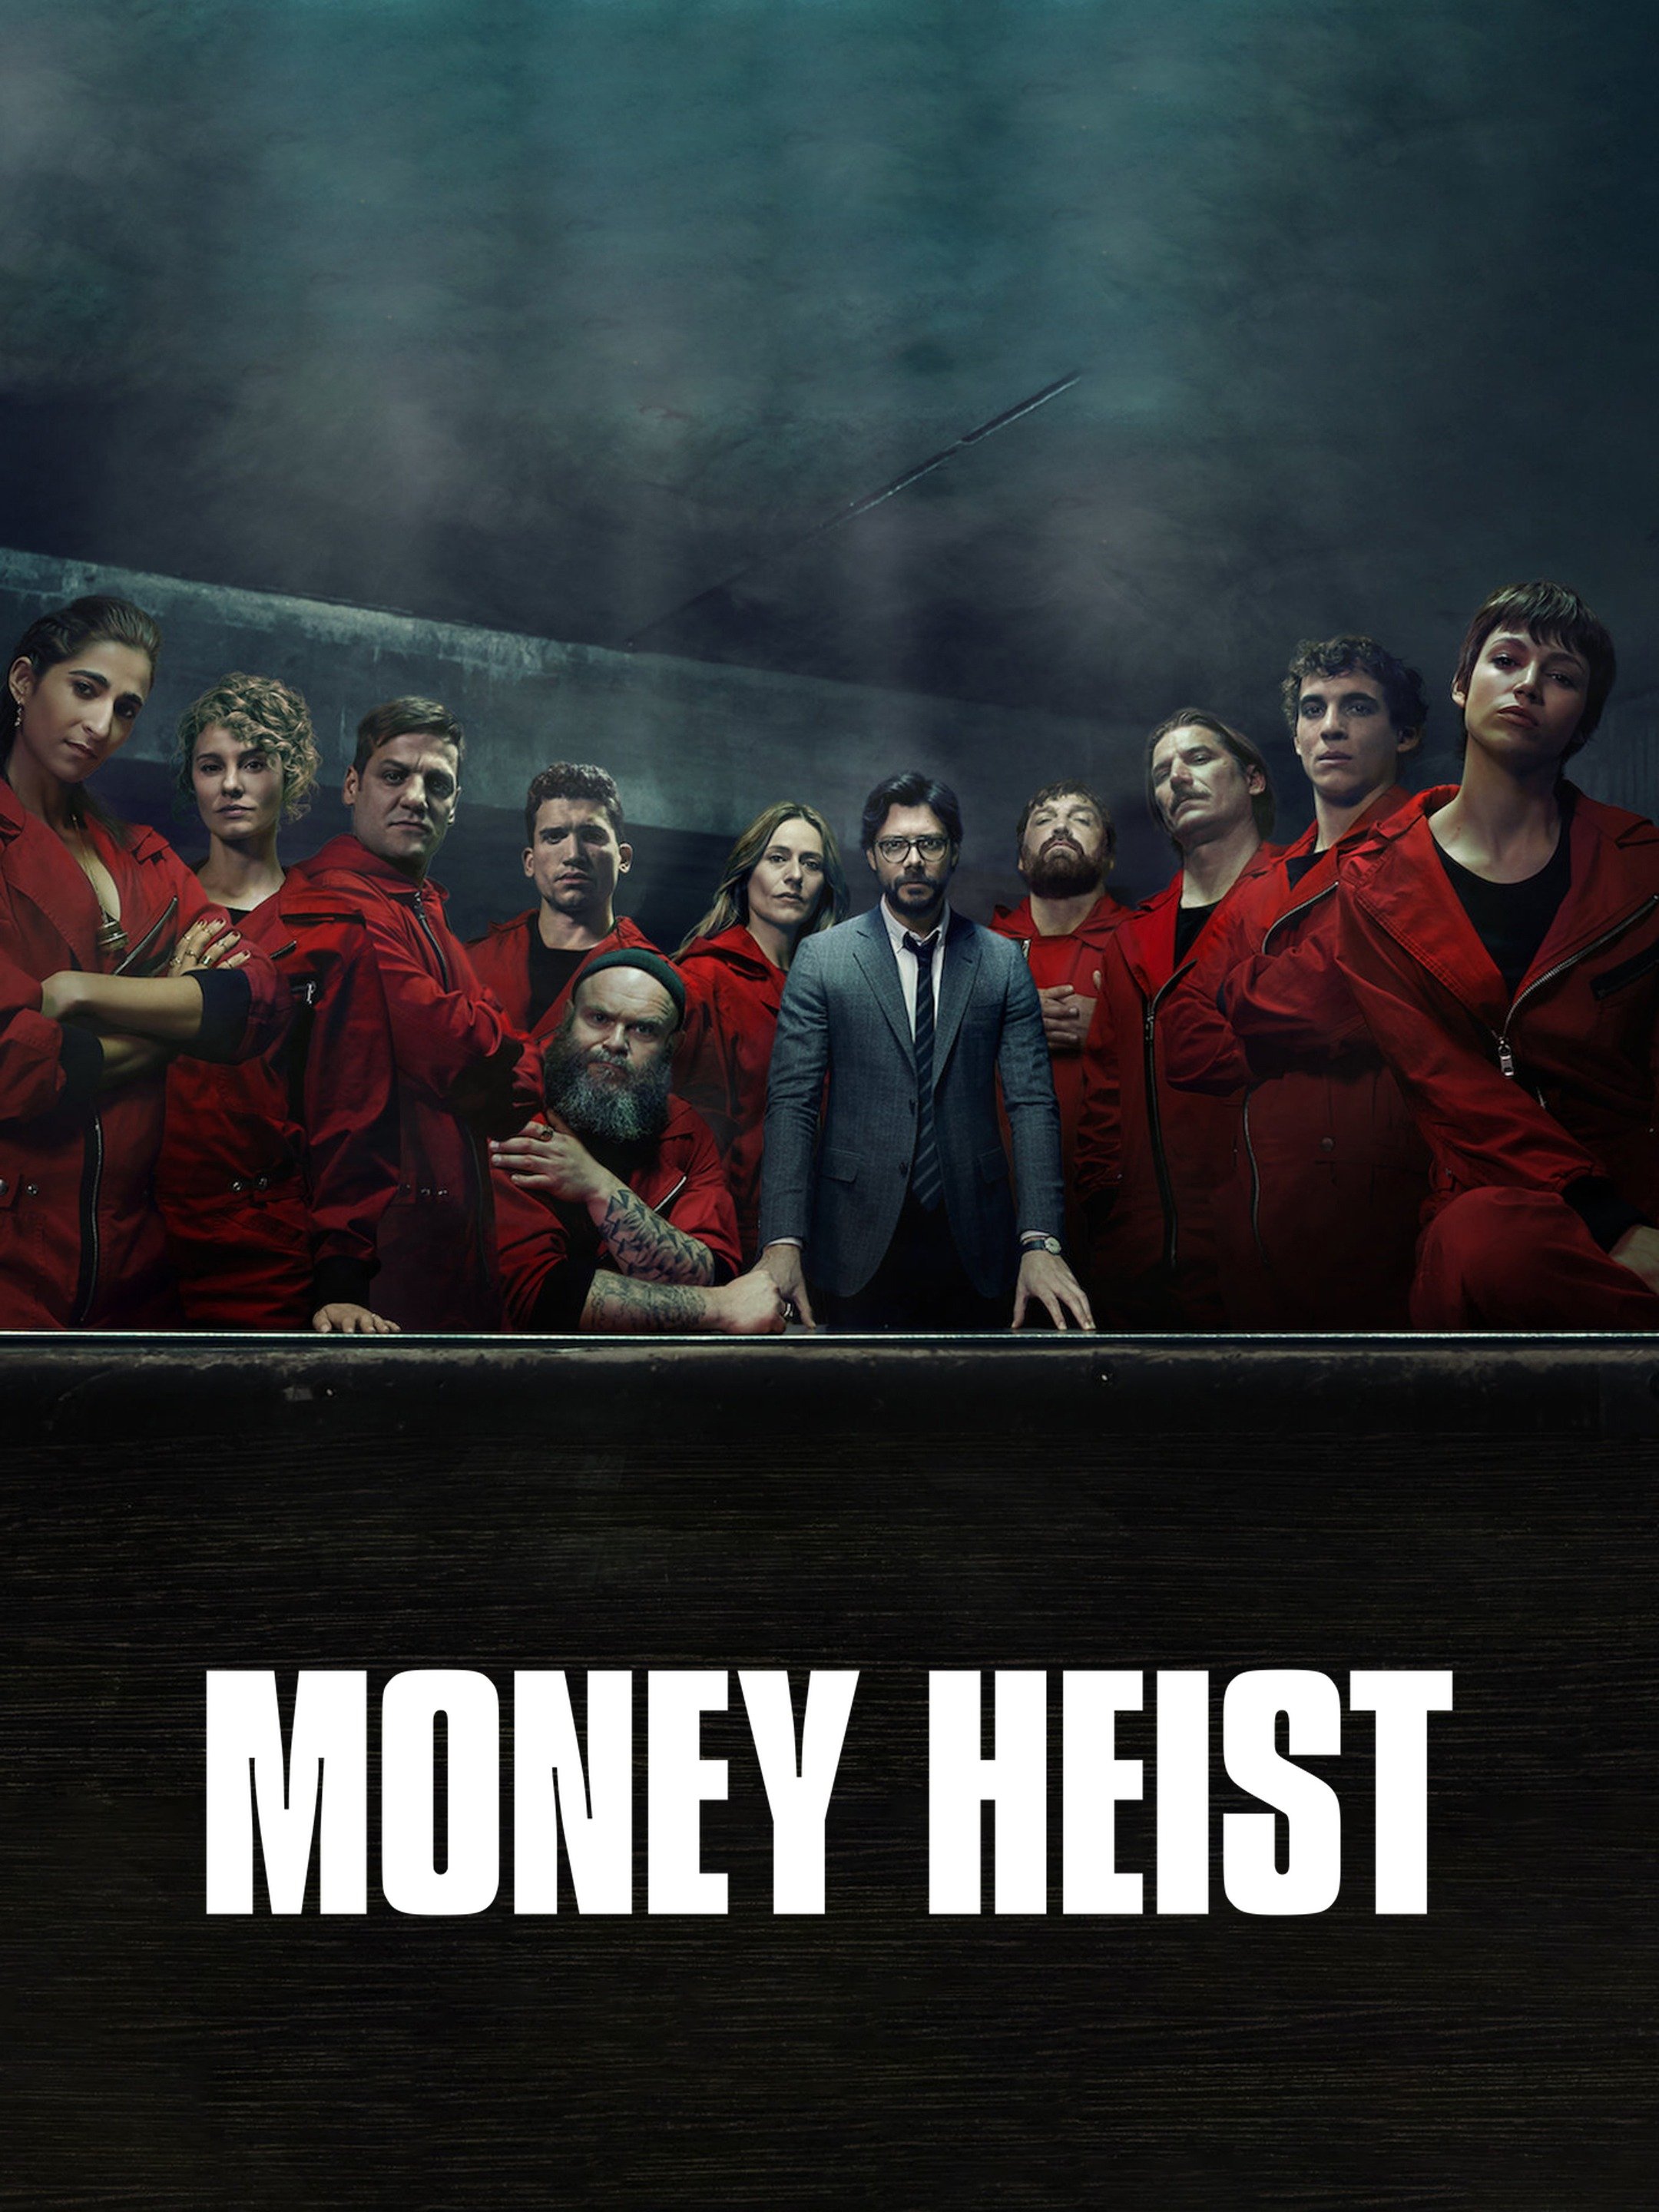 Heist 1 money cast season Money Heist